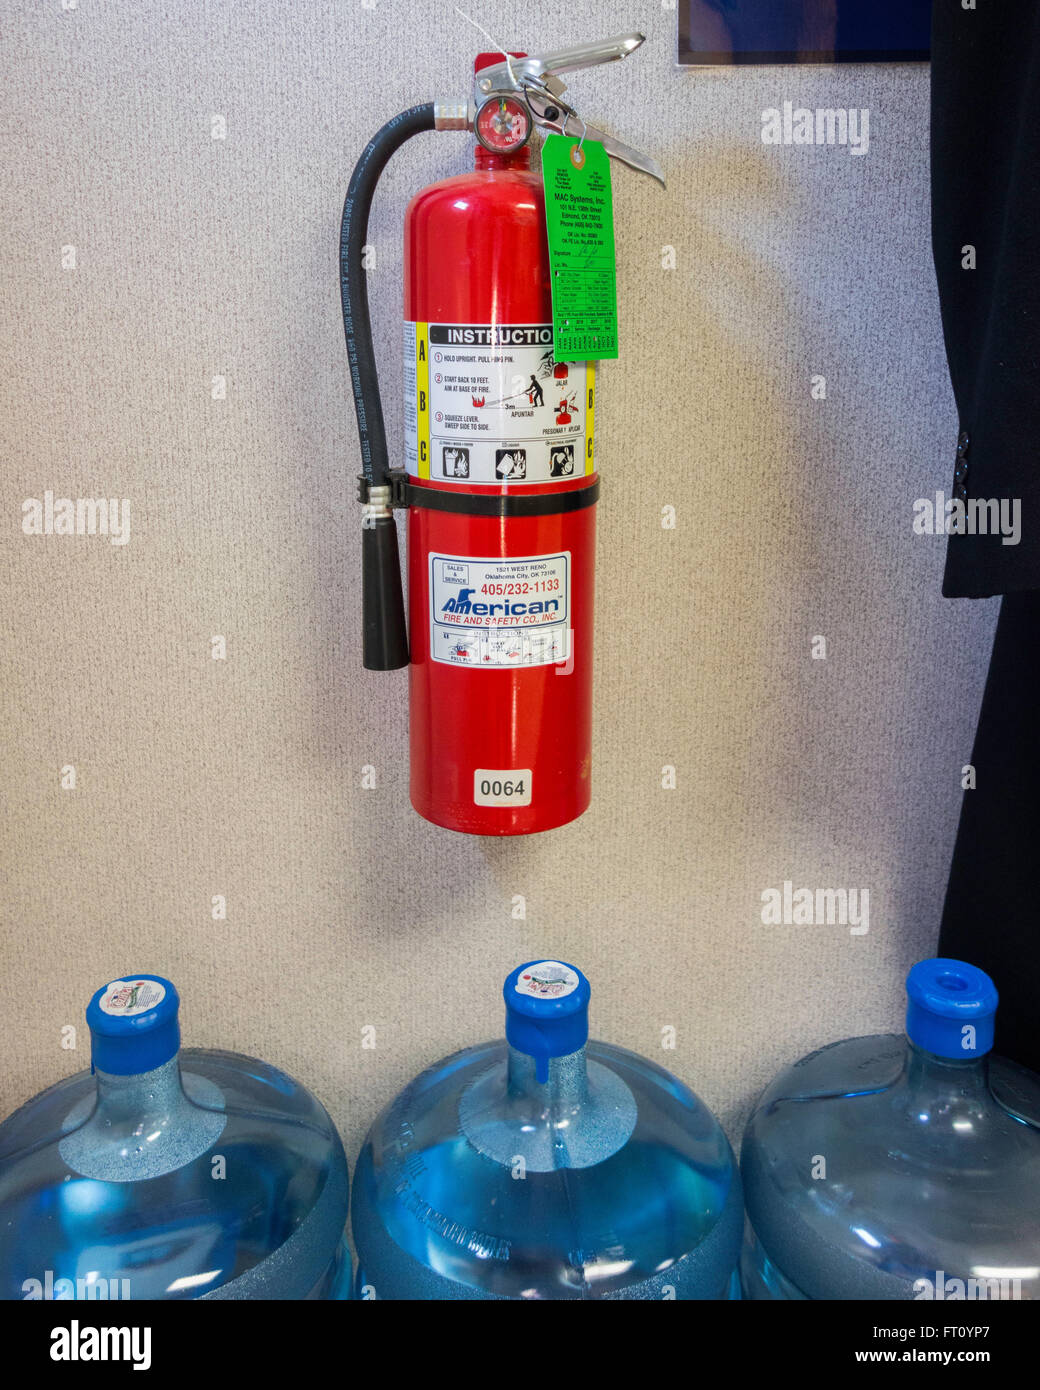 Ein obligatorische Feuerlöscher hängt an der Wand über 3 fünf Gallonen Wasser in Flaschen in einem Speicherbereich eines Unternehmens. Oklahoma, USA. Stockfoto